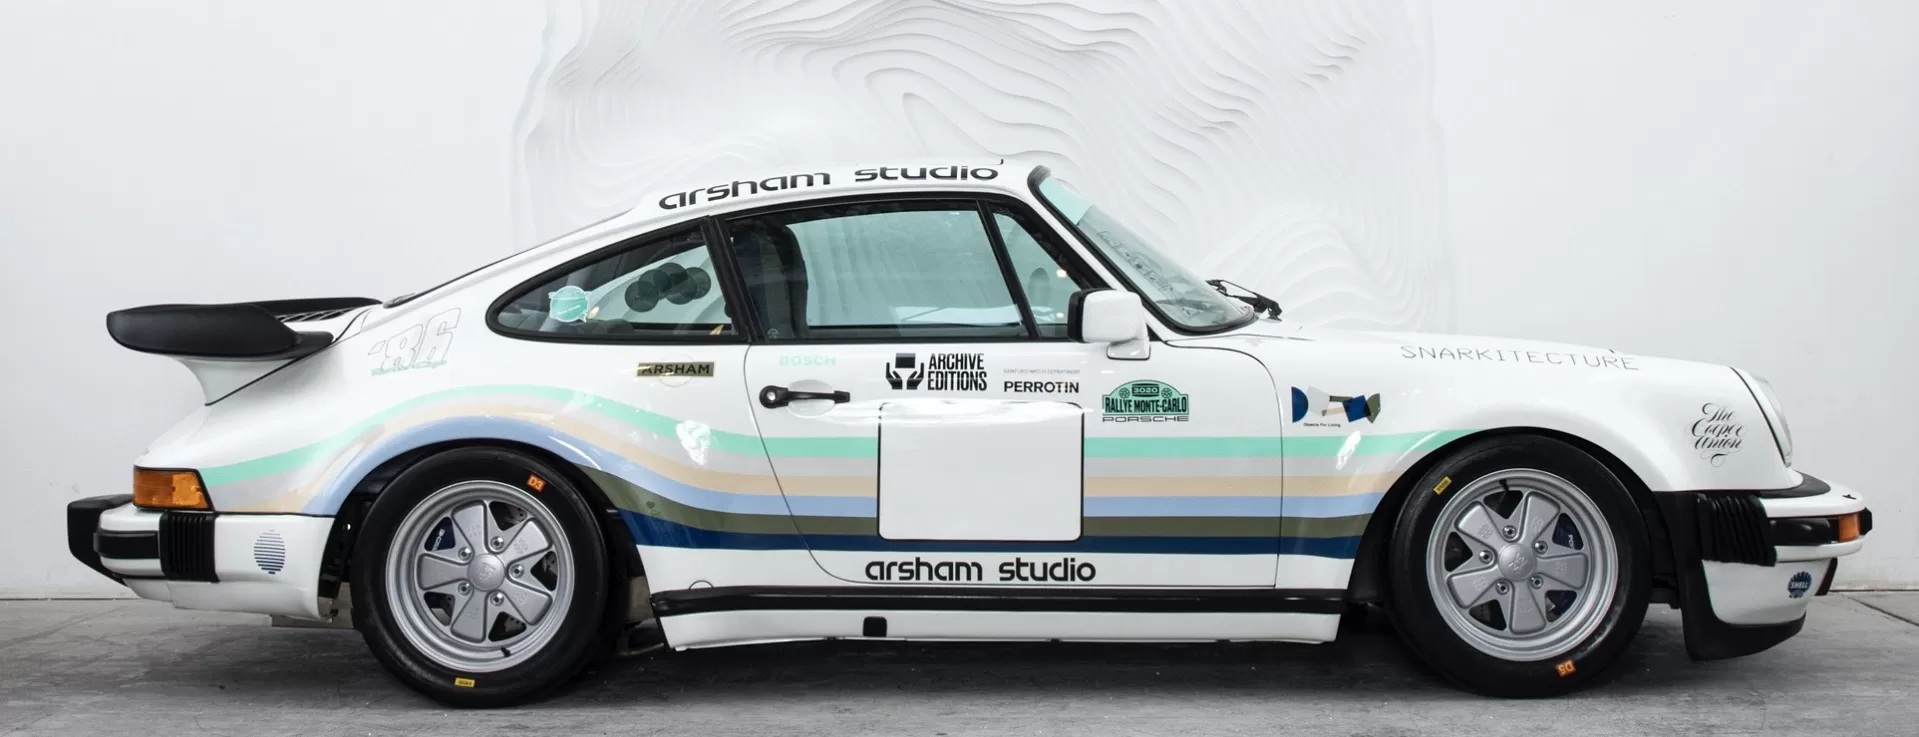 Дэниел Аршам увековечивает историю своей жизни в 911 Turbo